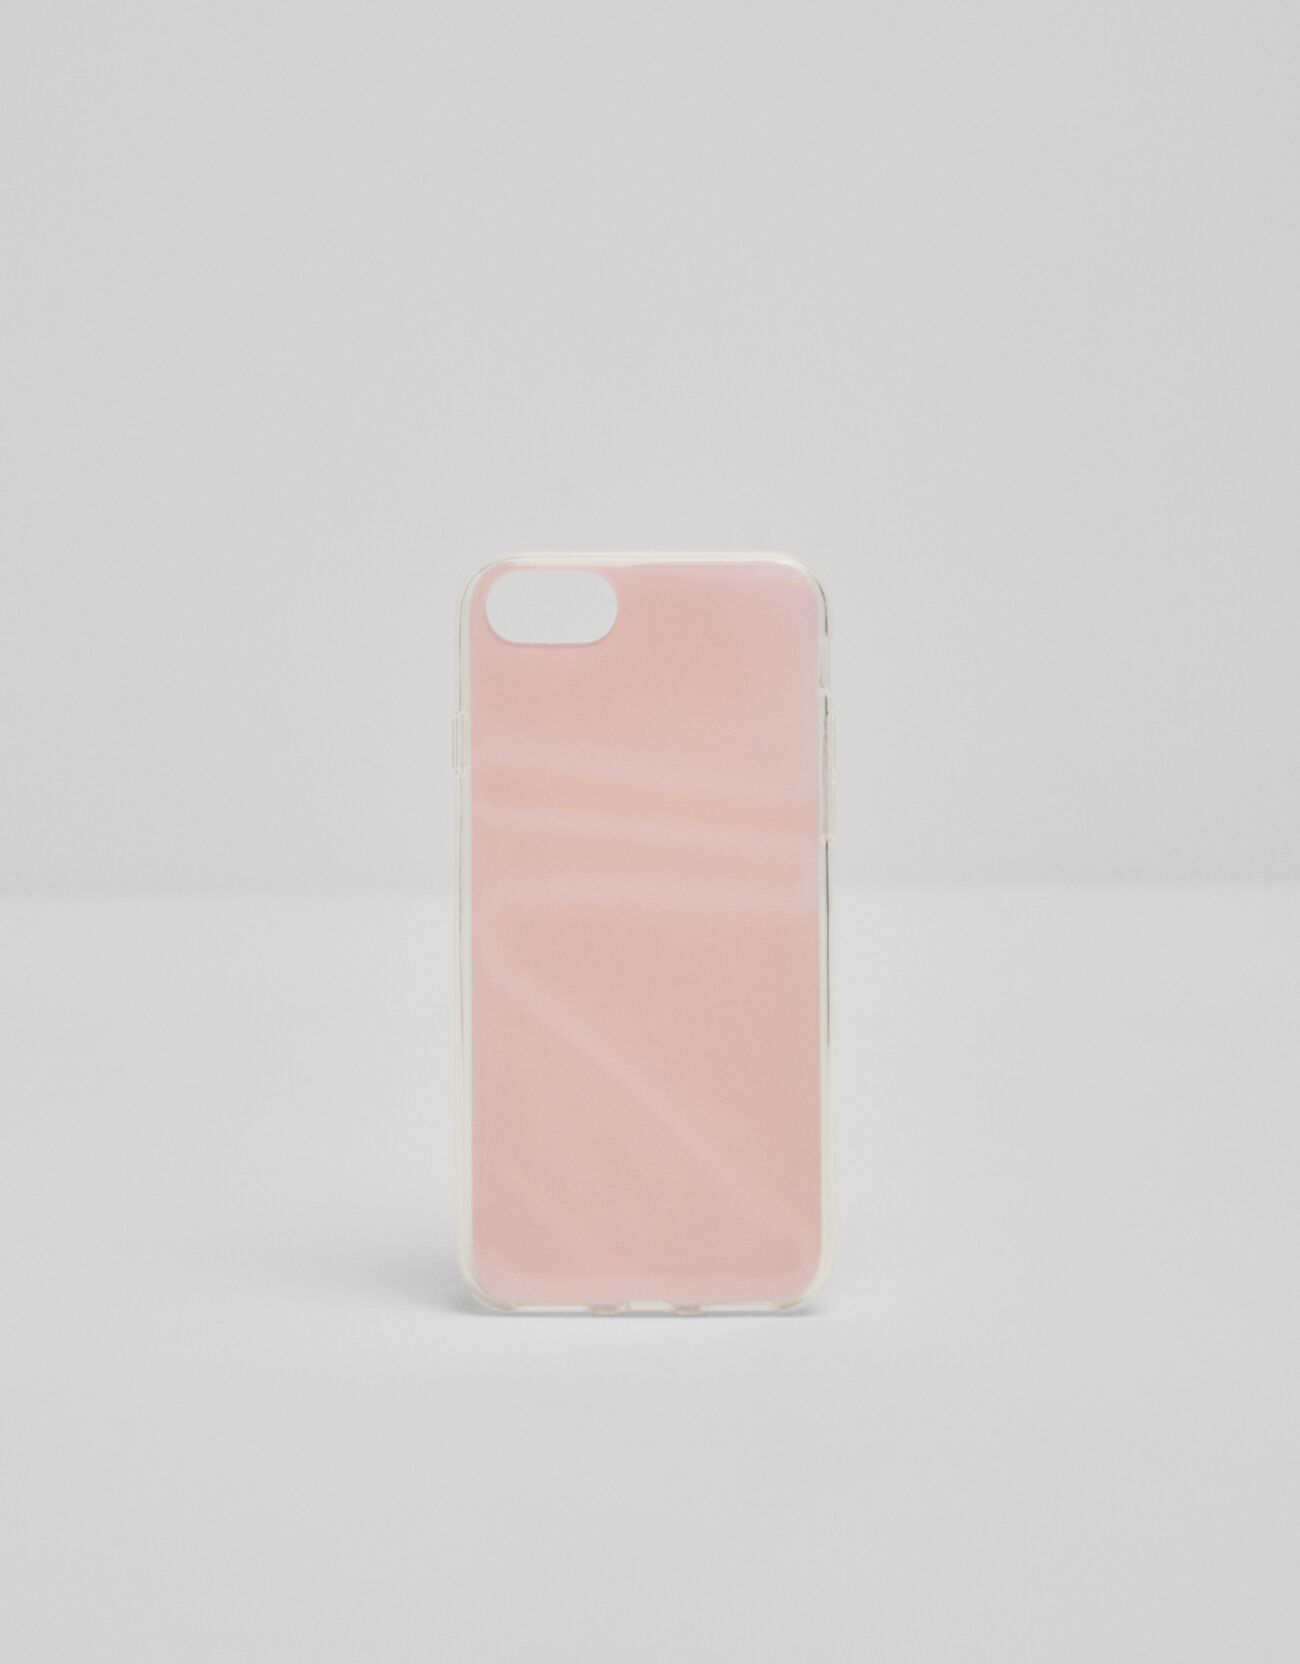 Светоотражающий чехол для iPhone 6/7/8 в пастельных тонах Розовый Bershka